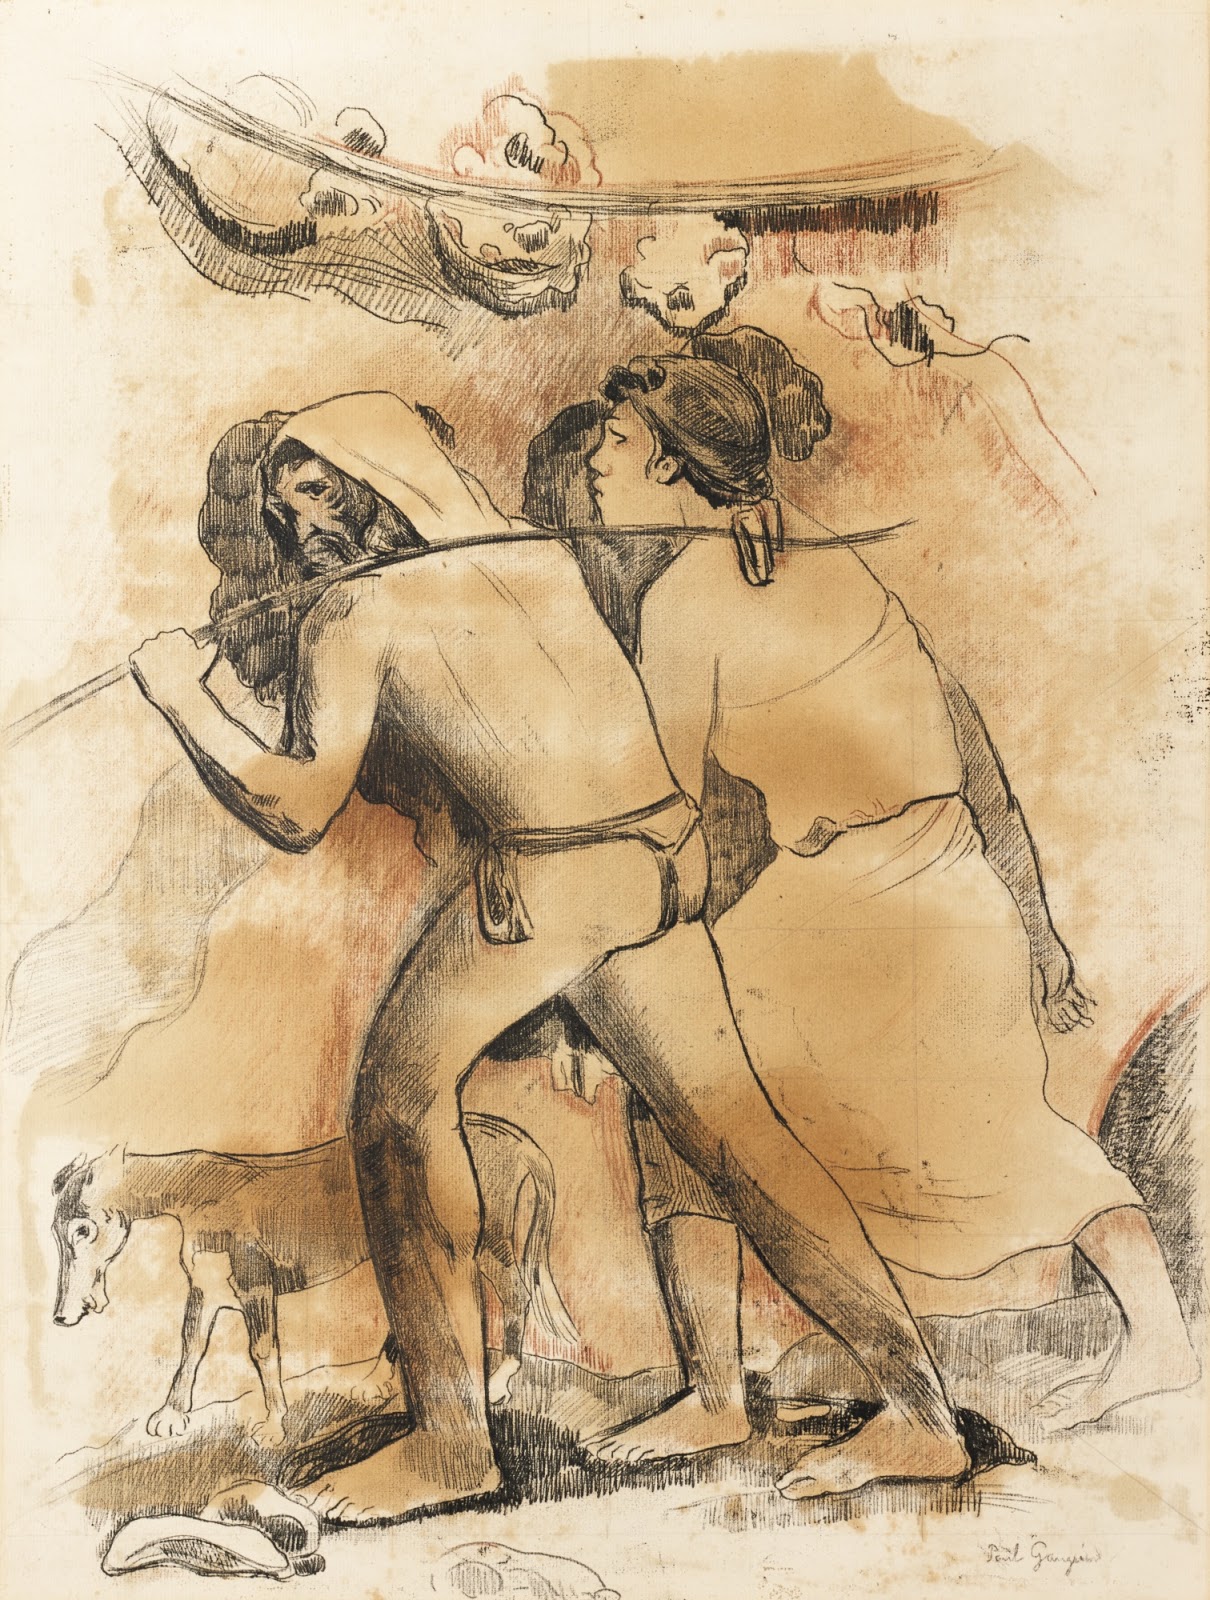 Paul+Gauguin-1848-1903 (286).jpg